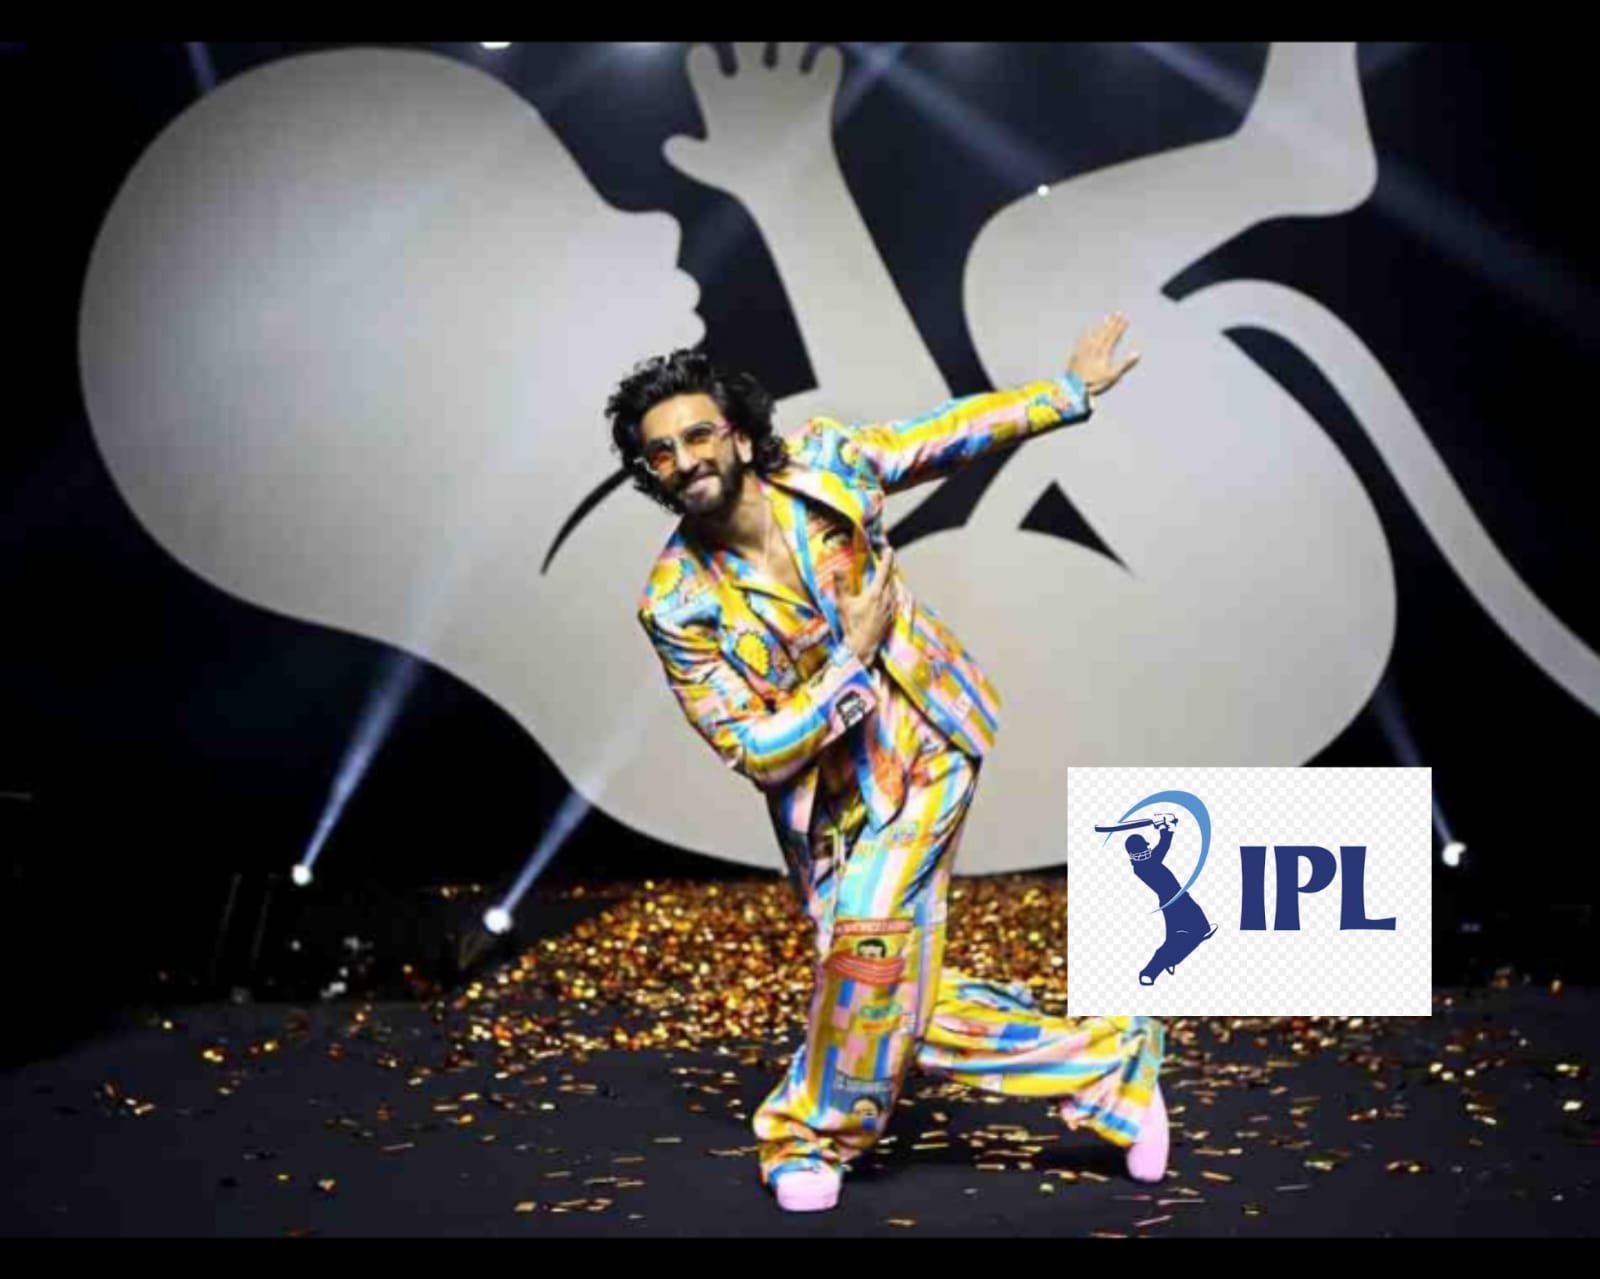 Upacara Penutupan IPL 2022: Selain Ranveer Singh, upacara penutupan IPL 2022 juga akan menampilkan CHHAU DANCE yang terkenal dari Jharkhand - Periksa Detail